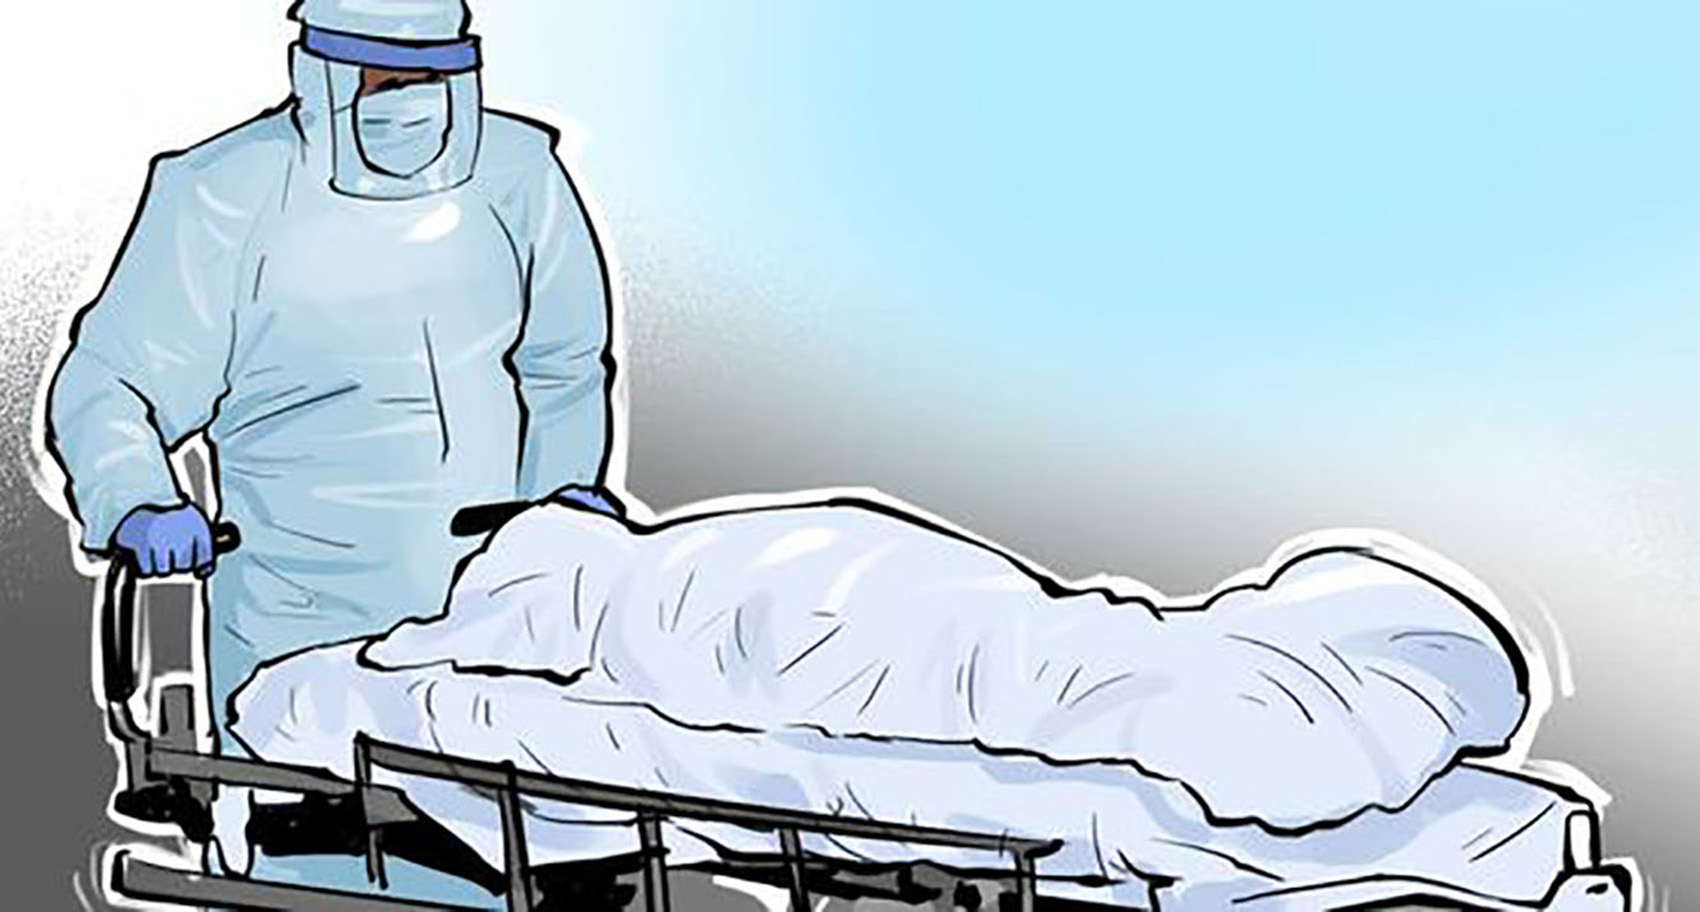 भेरी अस्पतालमा १६ बर्षीय बालकको कोरानाबाट मृत्यु